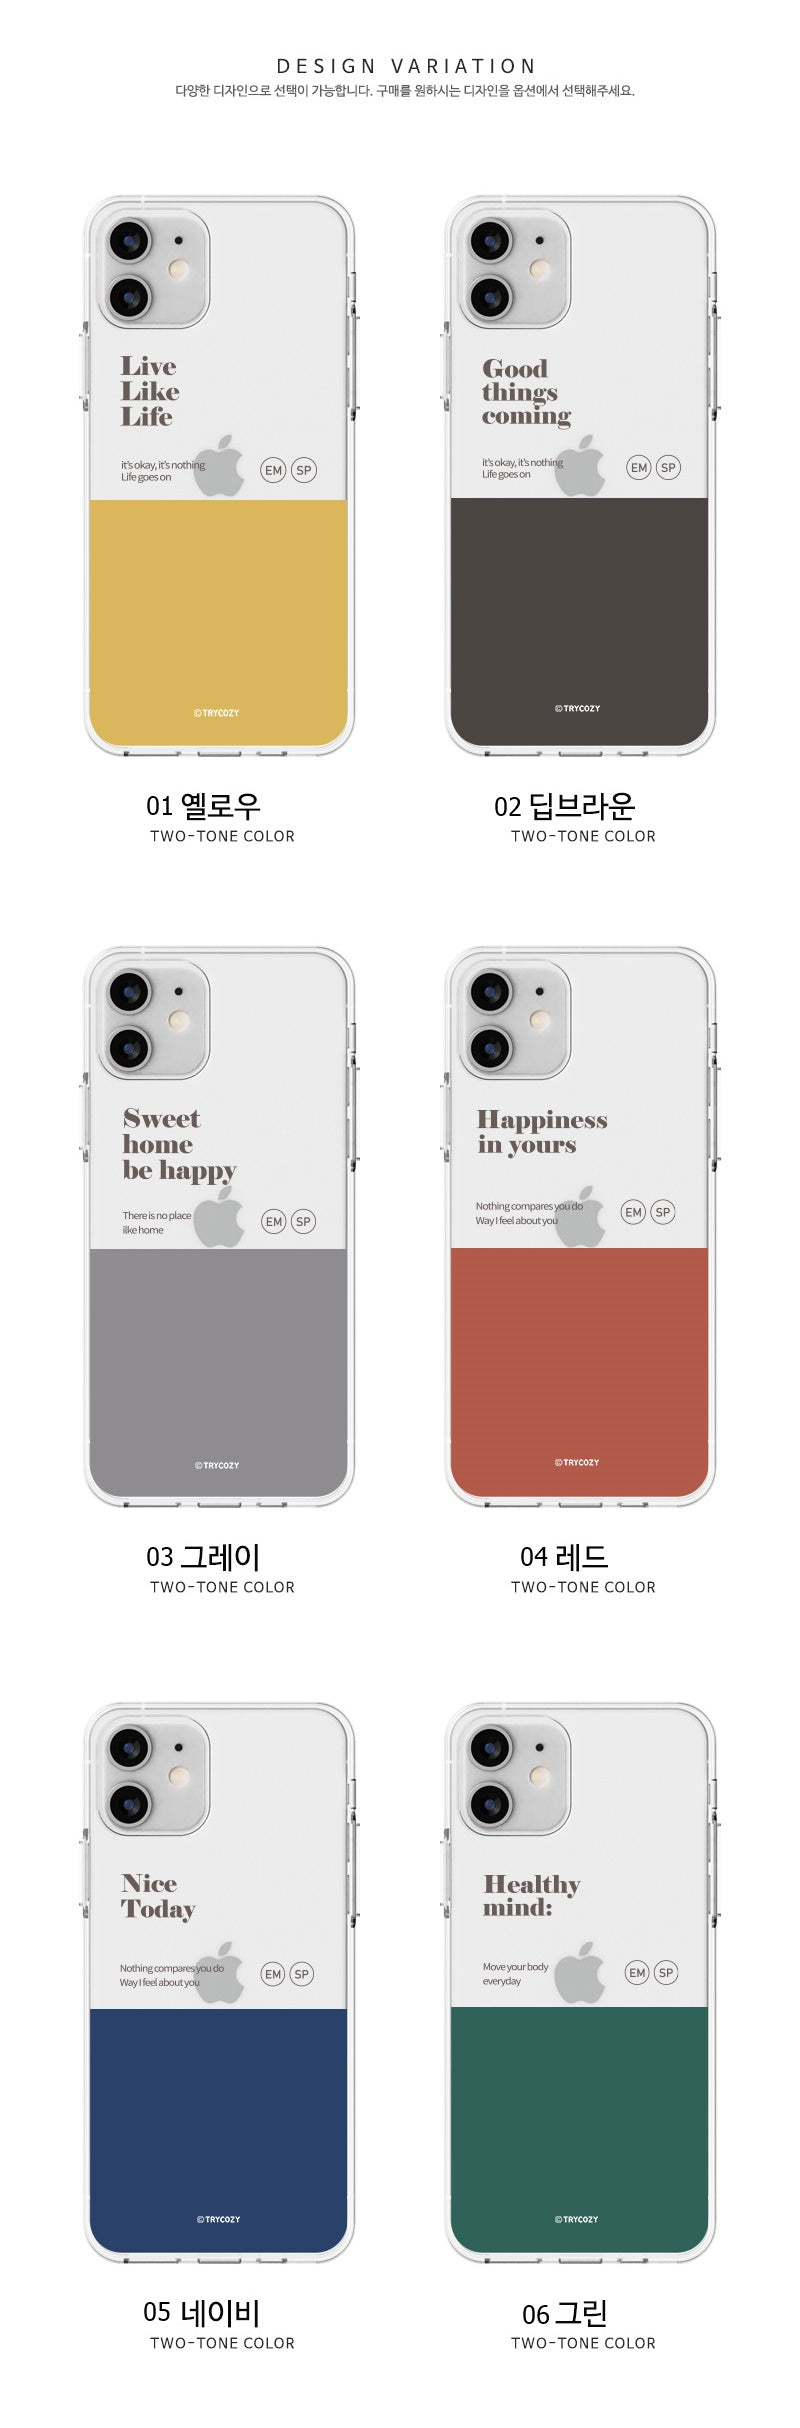 韓國直送 | J01 拼色 - 透明手機軟殼 iPhone / Samsung Galaxy 系列